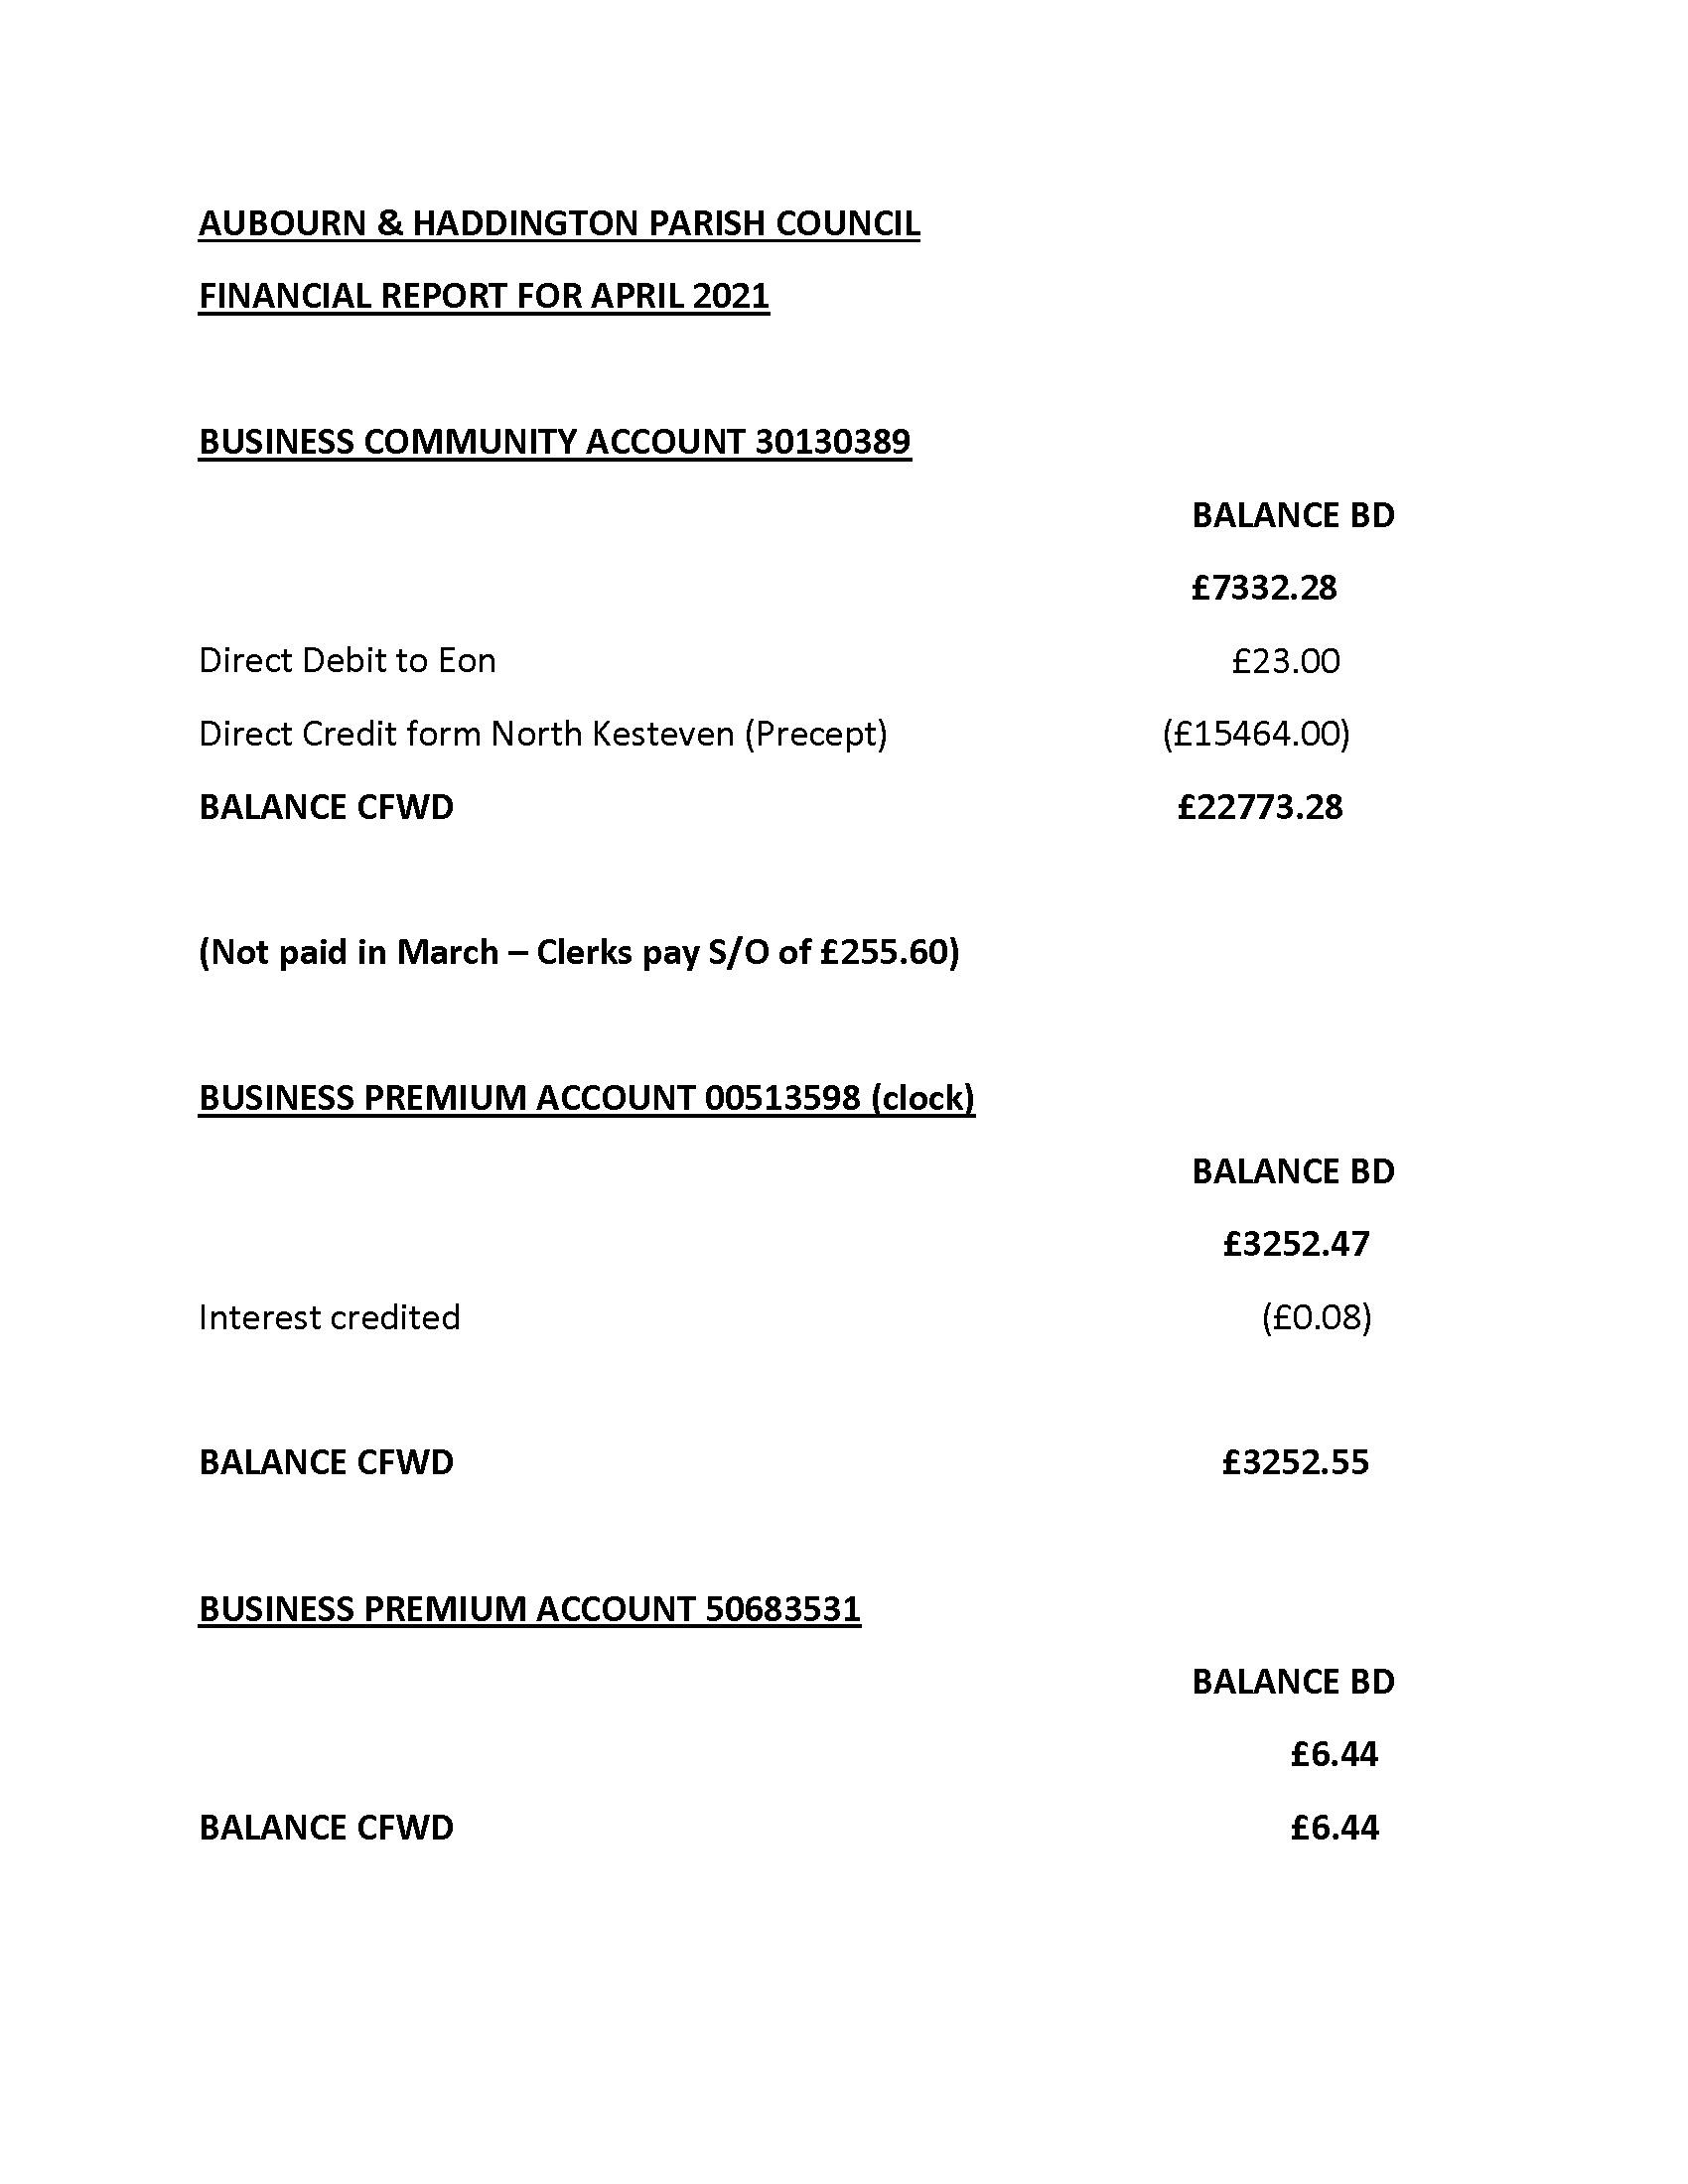 April 2021 financial accounts